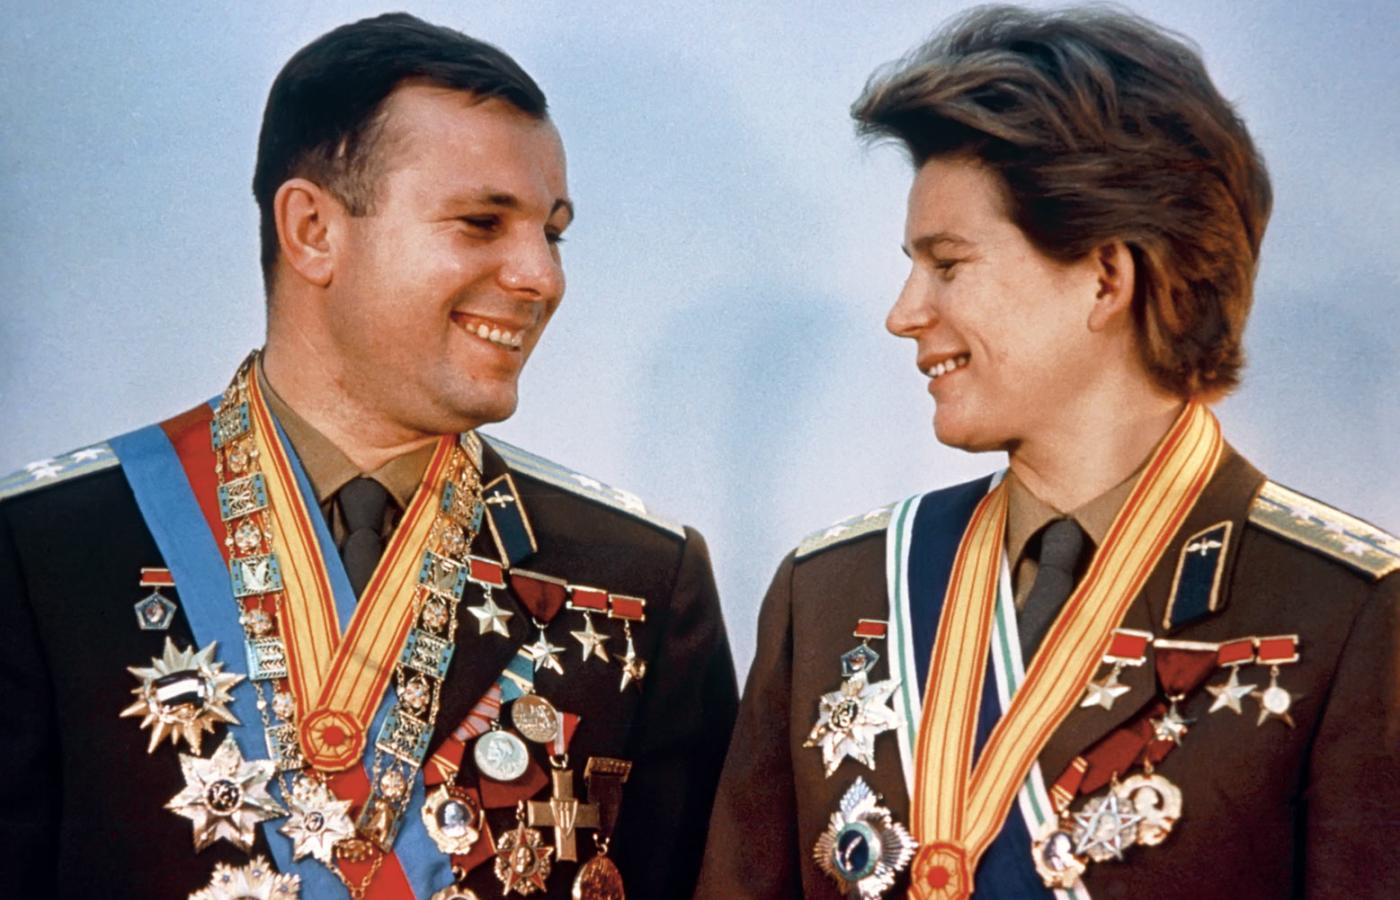 Wszyscy kosmonauci otrzymywali tytuł Bohatera ZSRR. Na zdjęciu Jurij Gagarin i Walentyna Tiereszkowa.